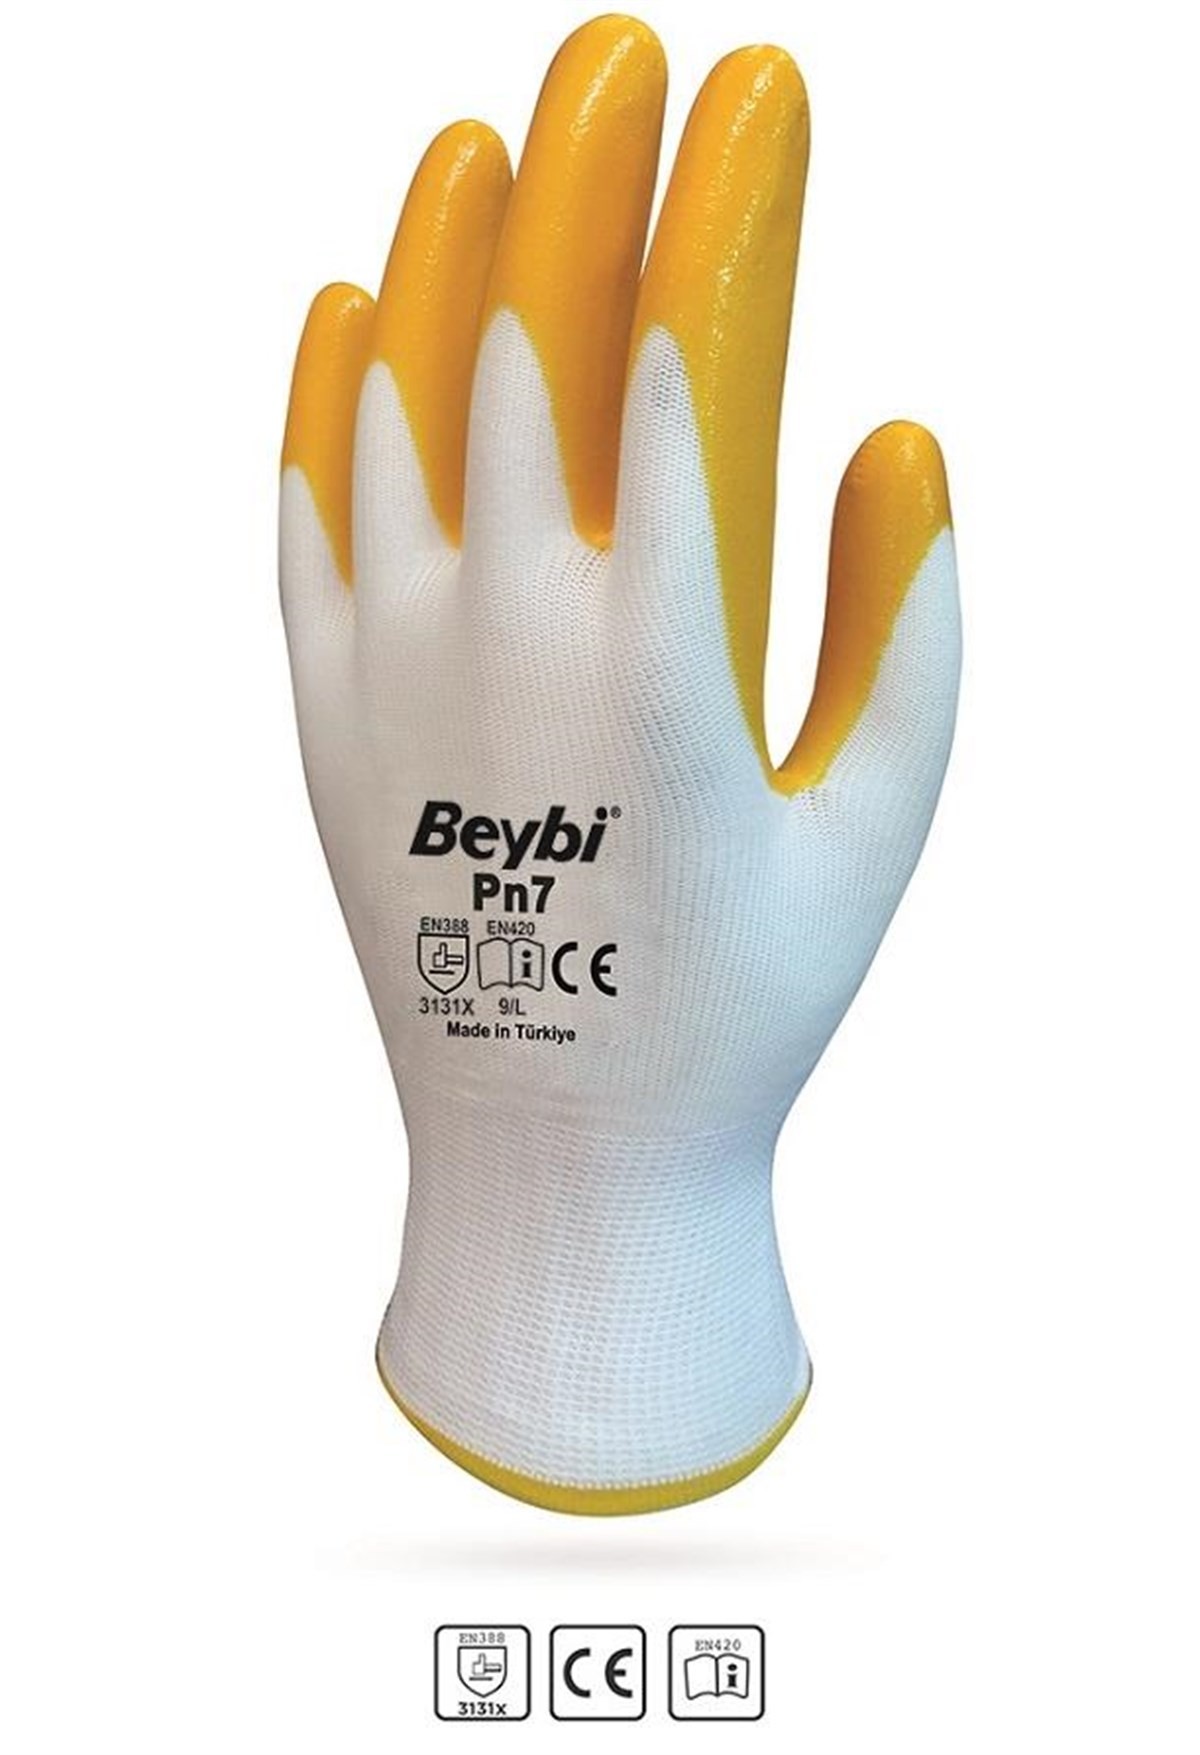 Beybi Pn7 Nitrile Gloves - Yellow (10 pairs)